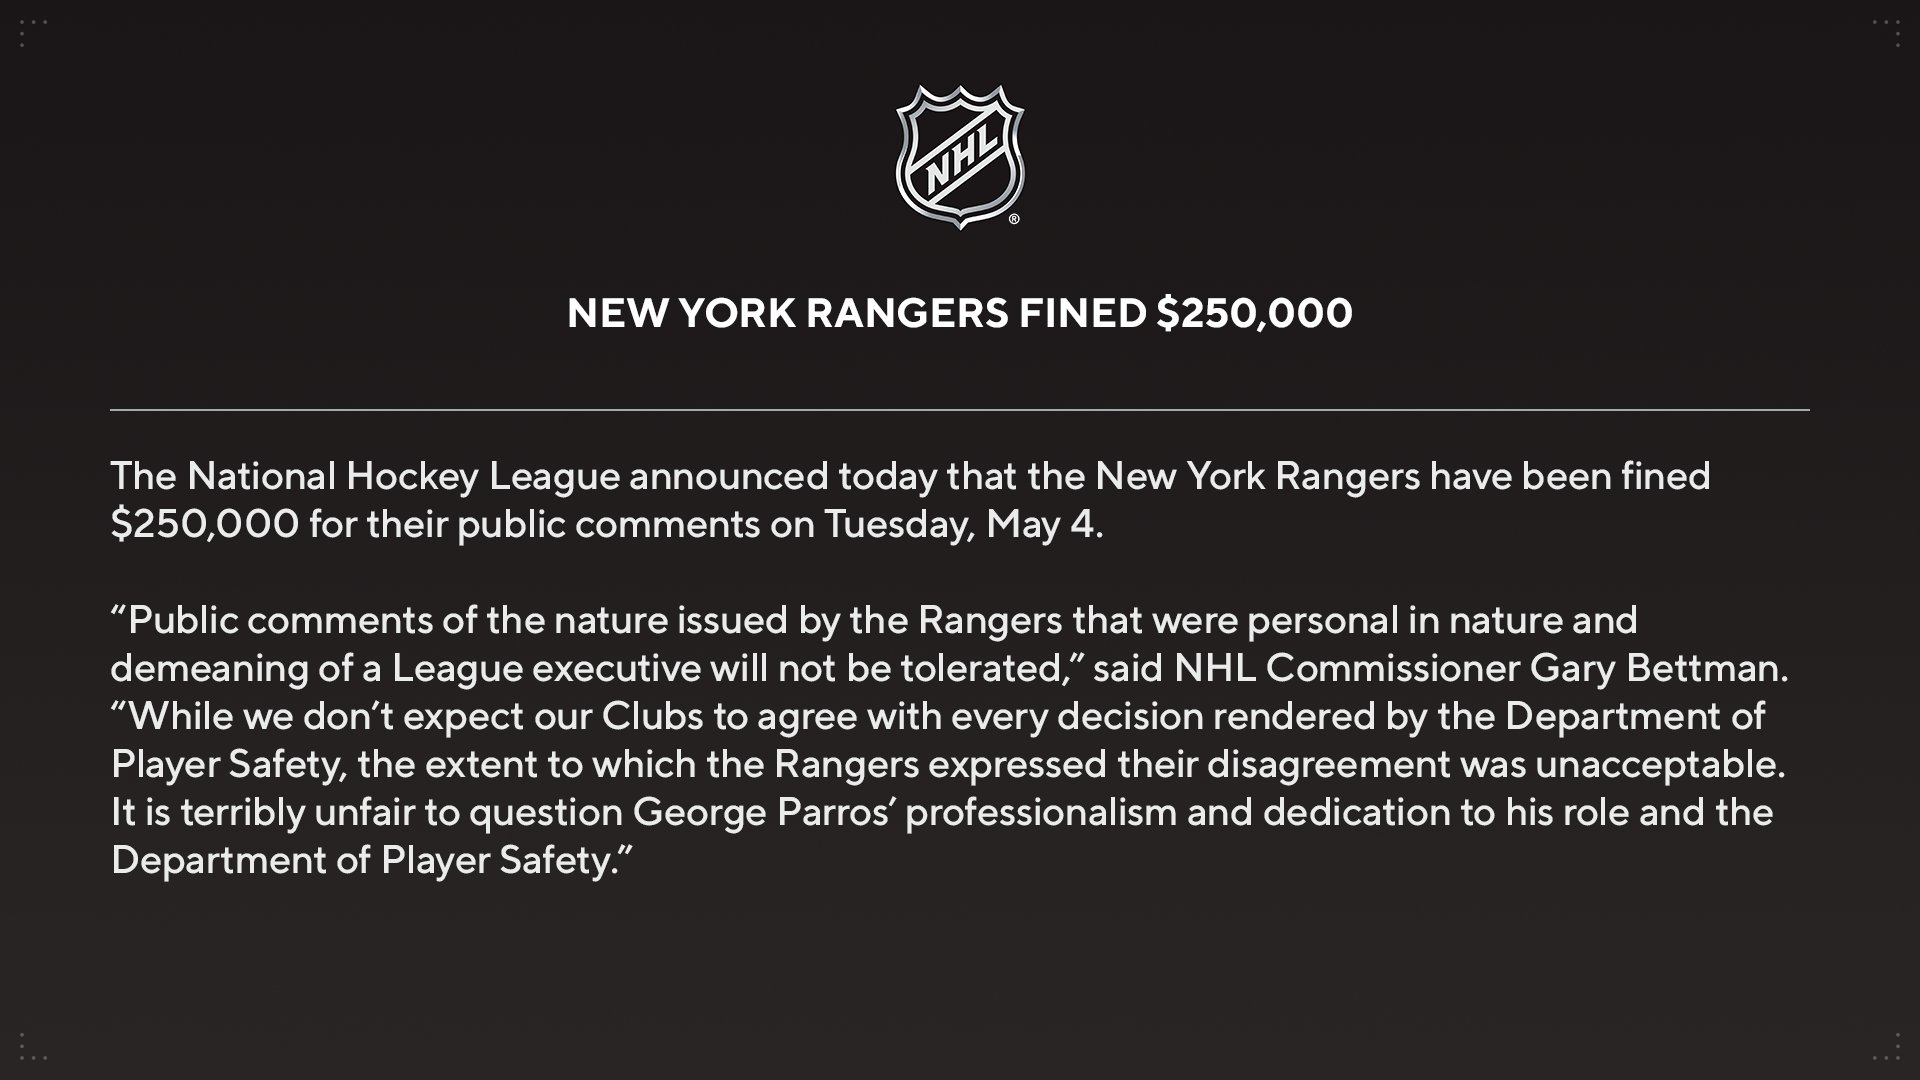 New York Rangers News - NHL